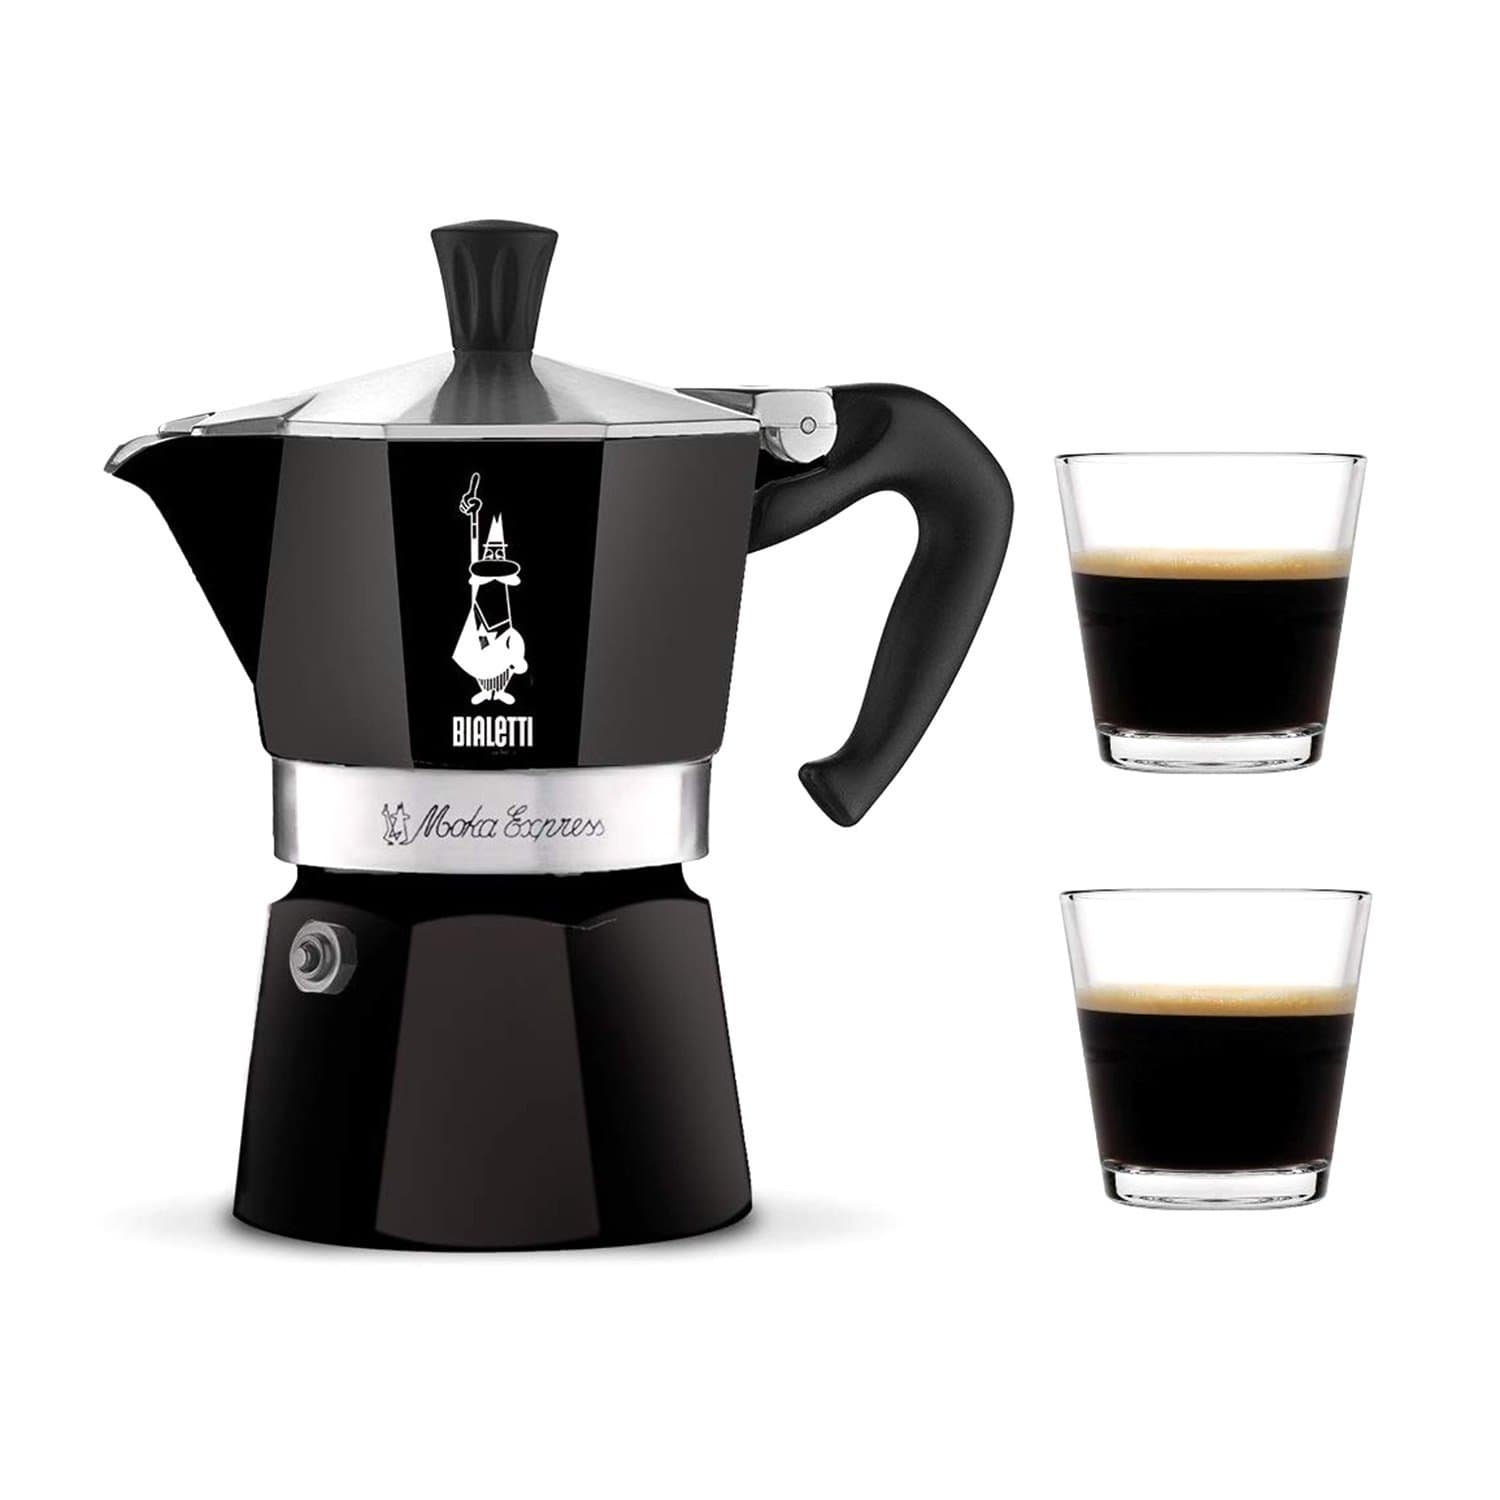 Bialetti Moka Express Coffee Maker - Black, 130 ml - 4952 - Jashanmal Home